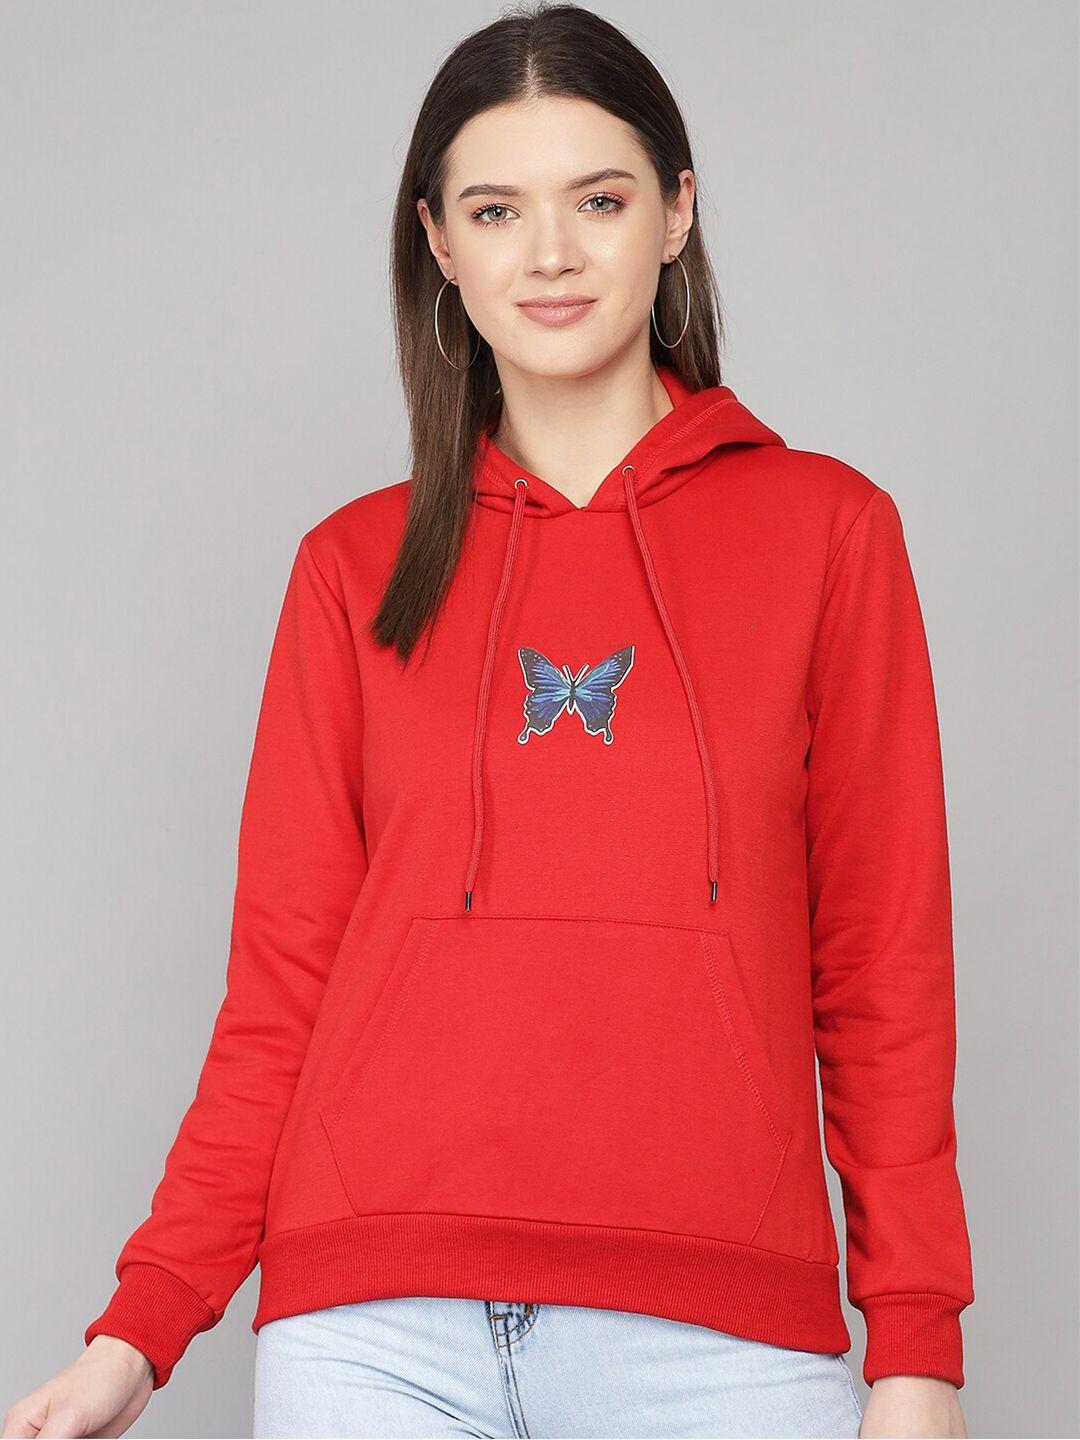 kotty women red printed hooded sweatshirt